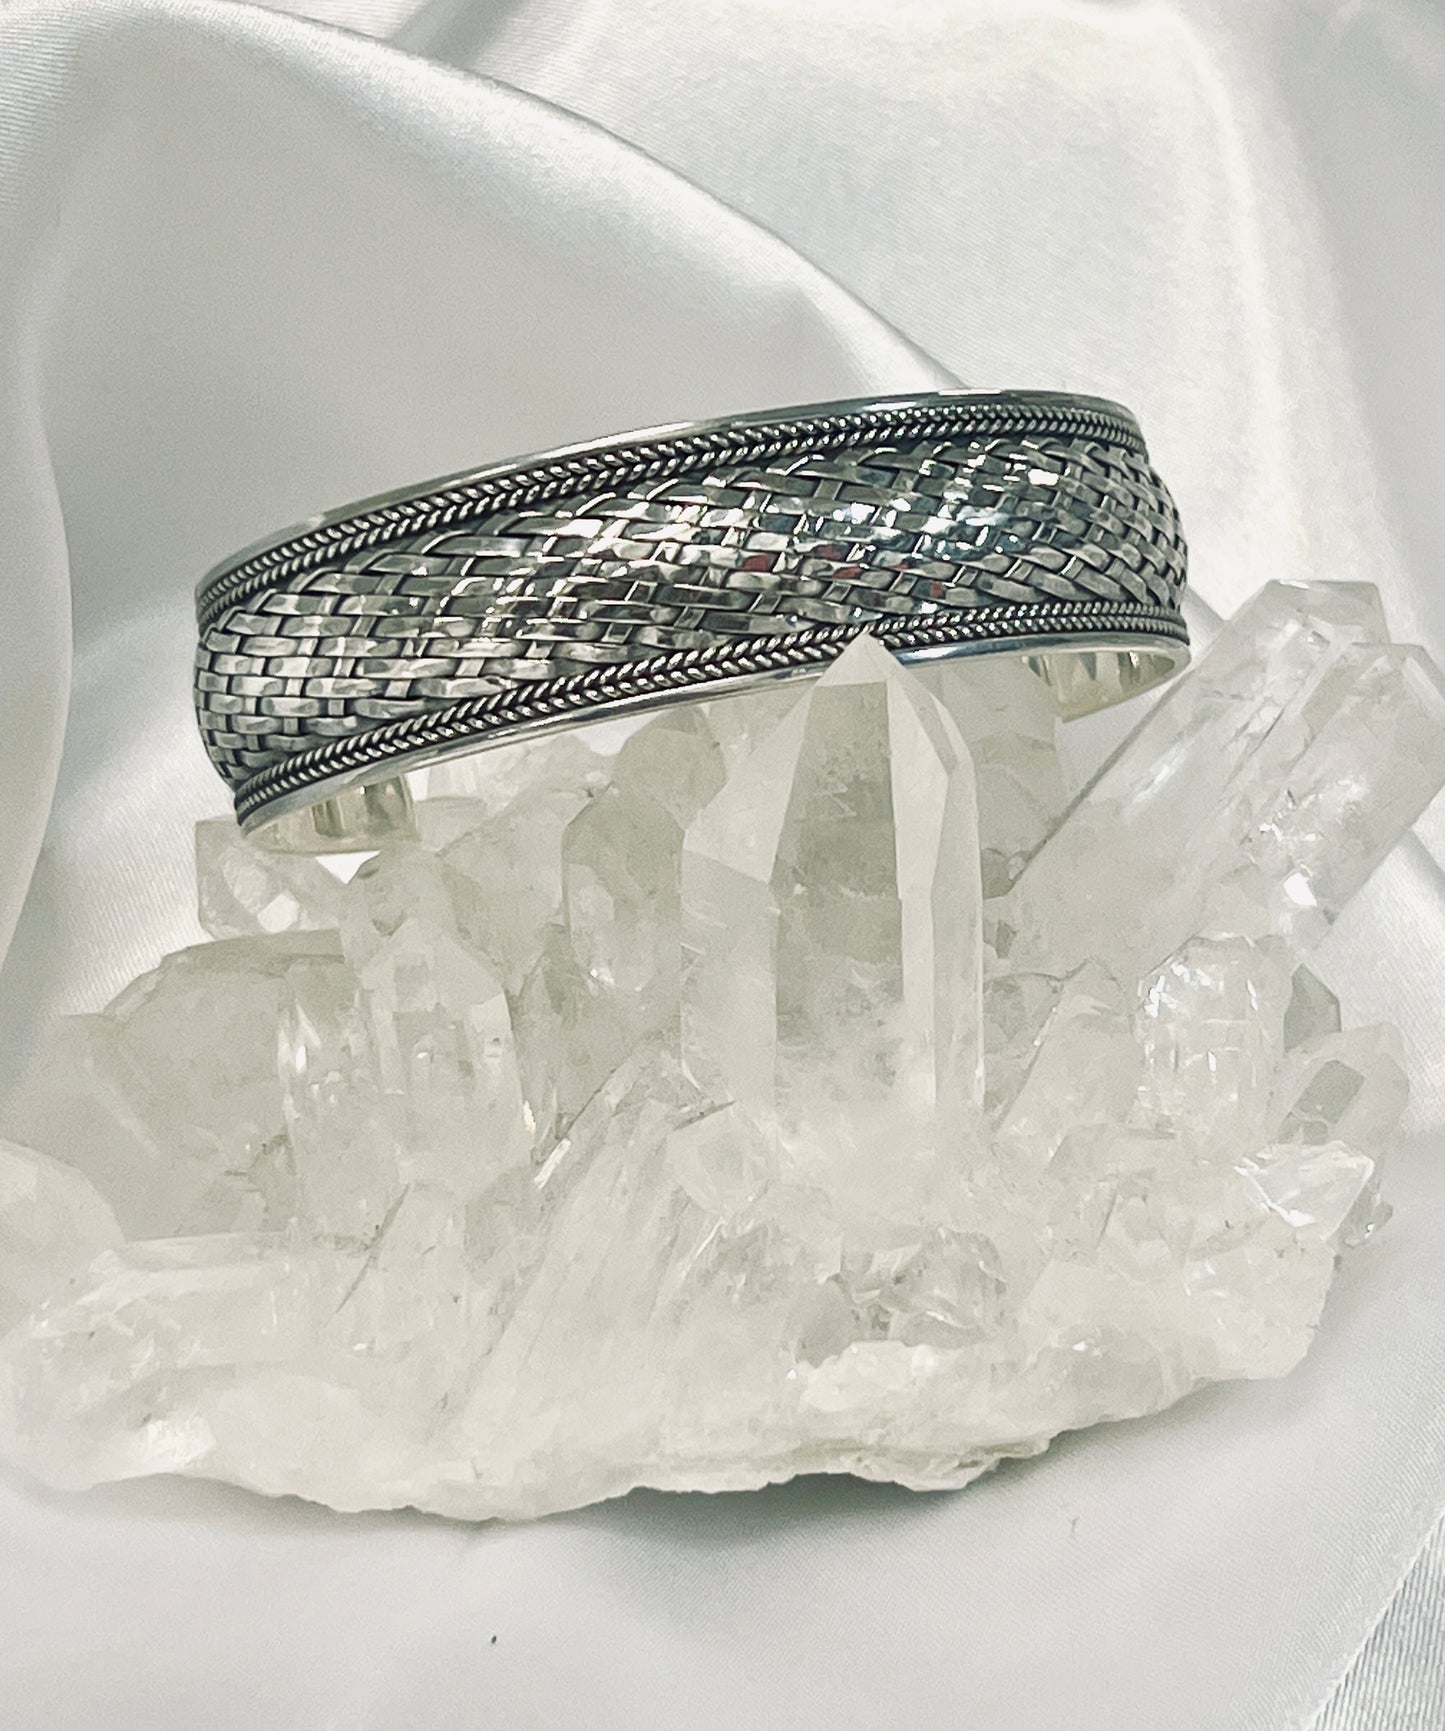 
                  
                    Woven Silver Cuff Bracelet
                  
                